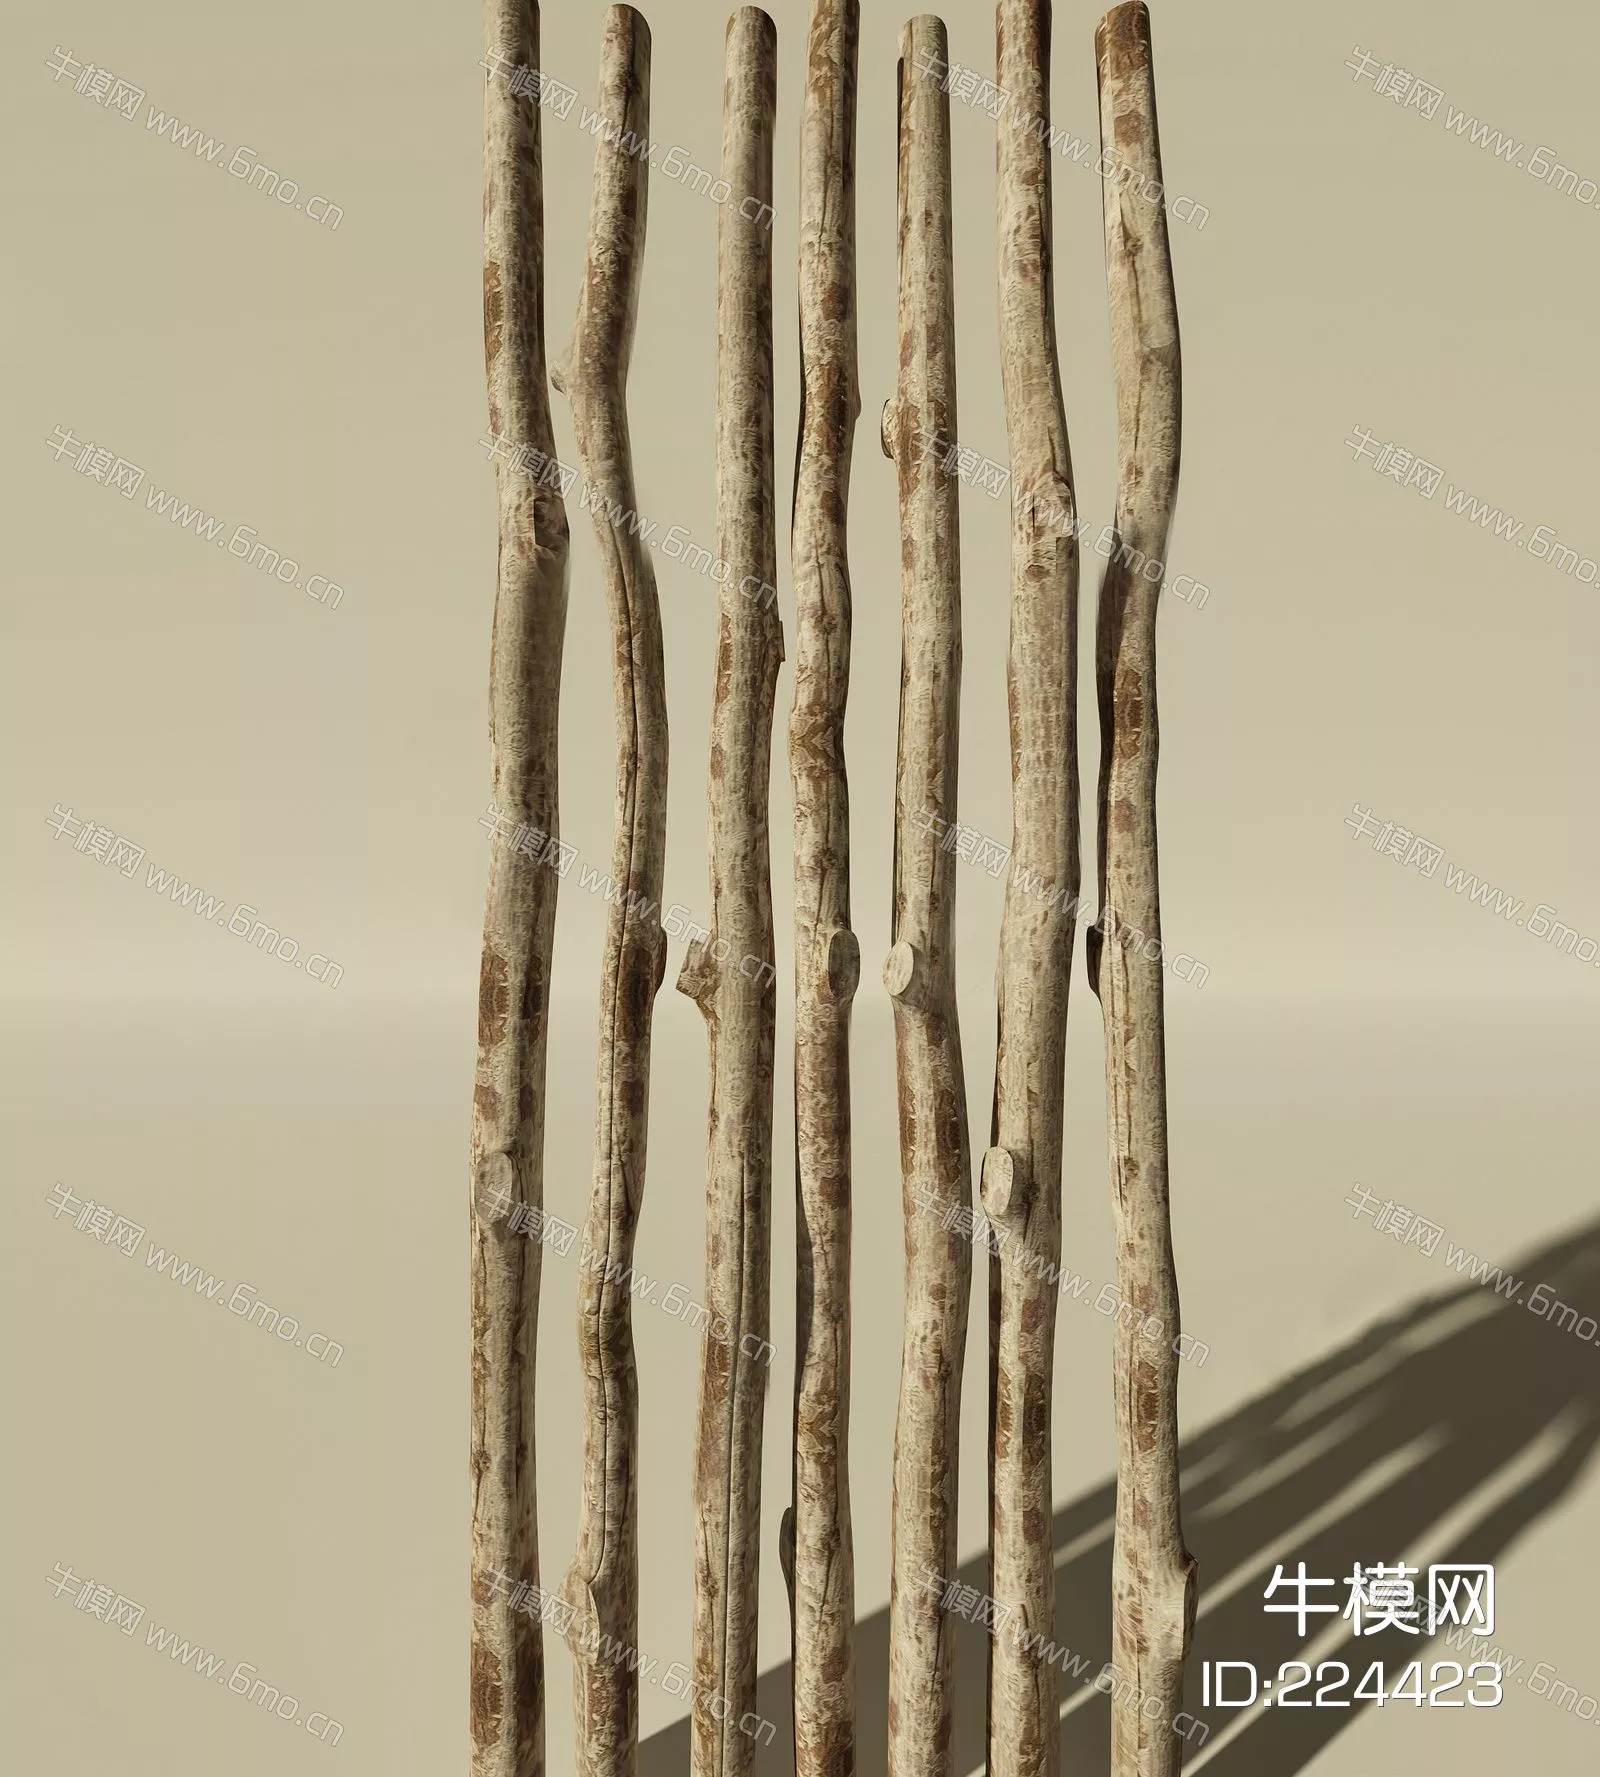 MODERN TREE - SKETCHUP 3D MODEL - ENSCAPE - 224423